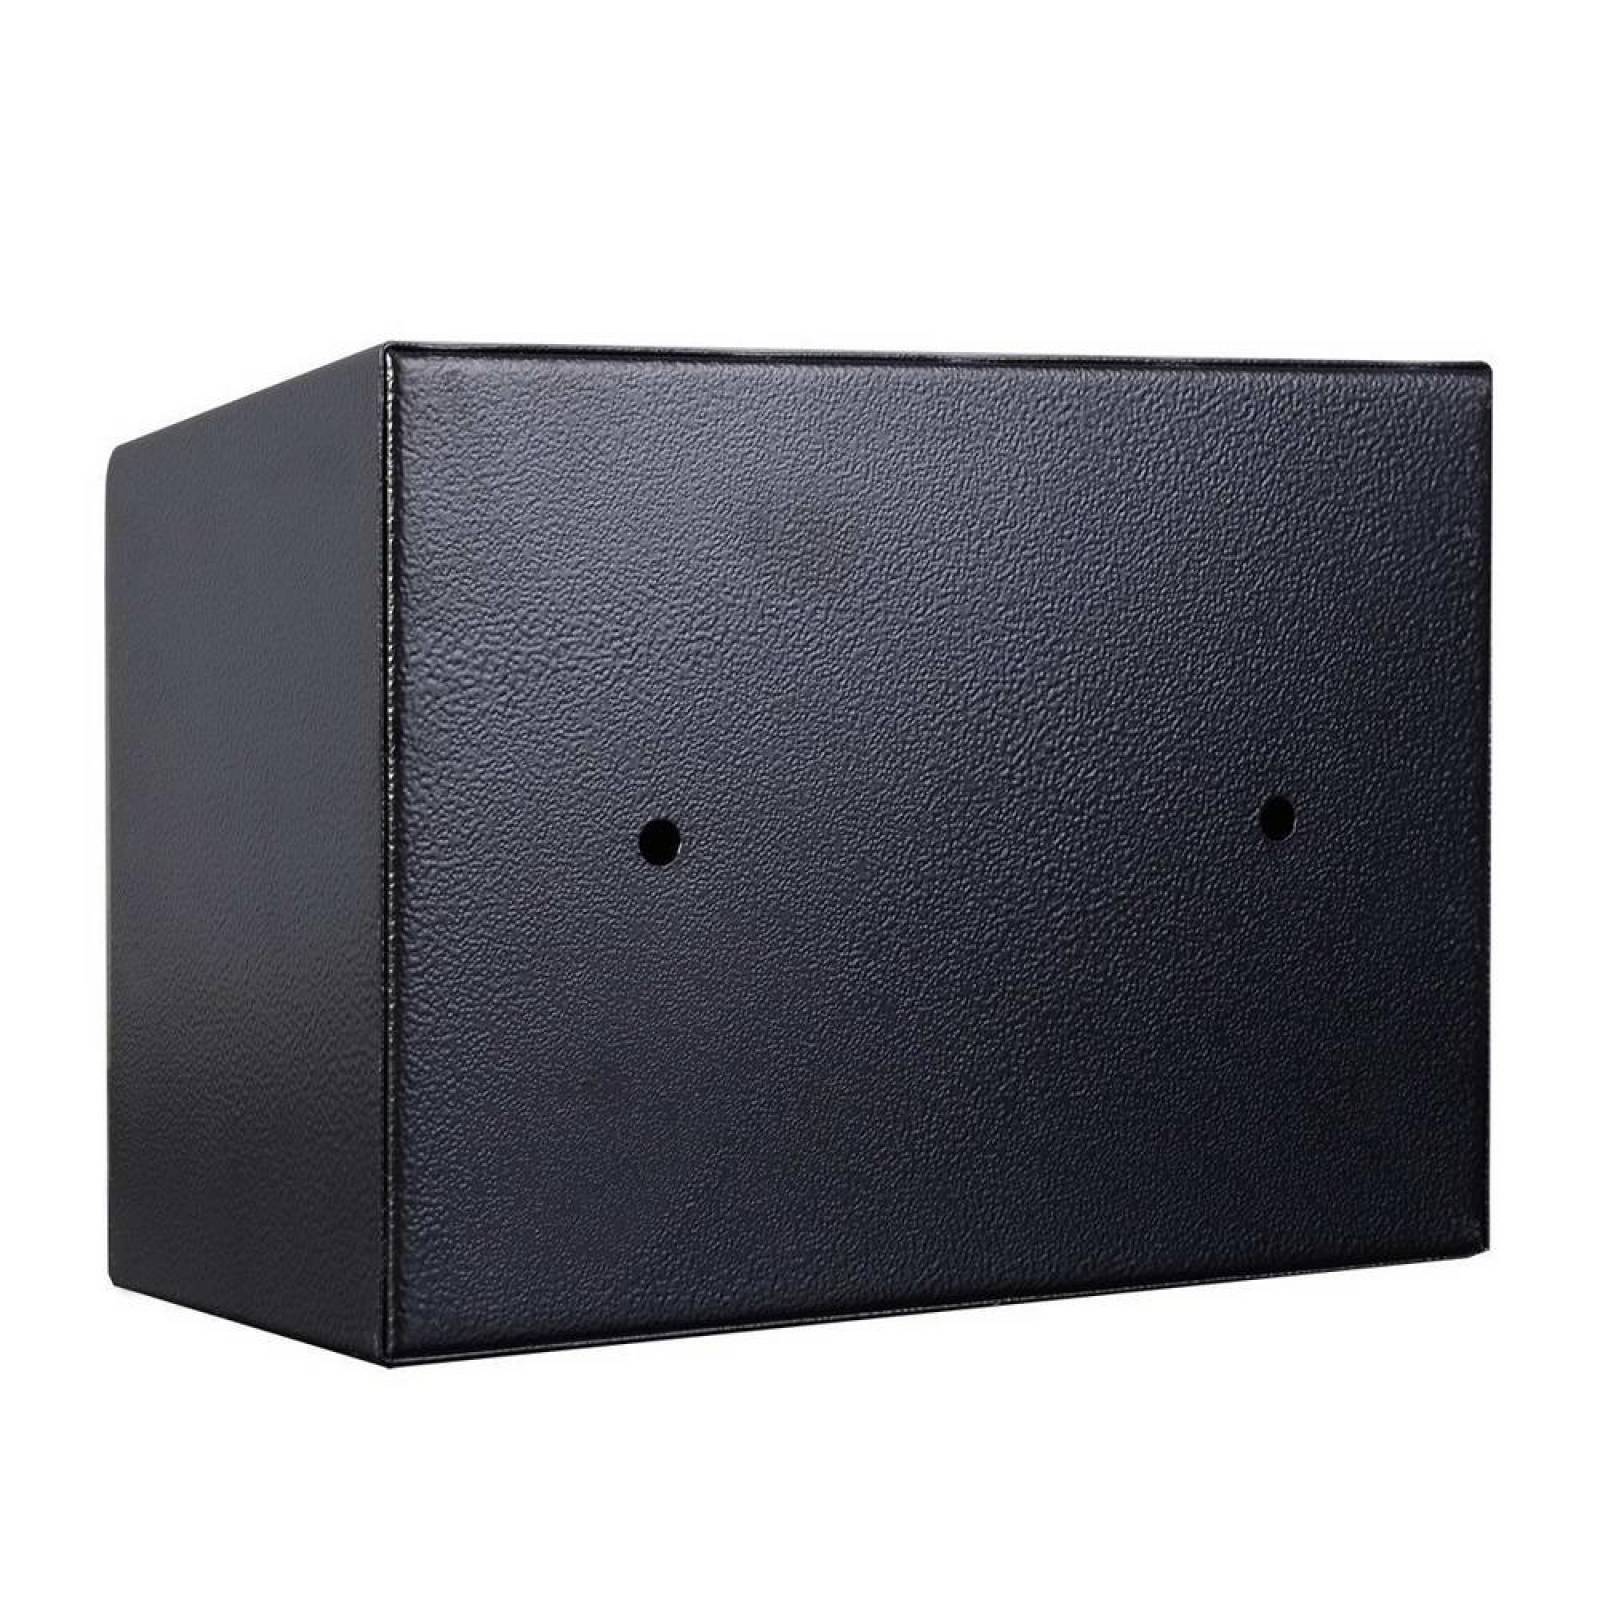 Caja Fuerte Electronica De Seguridad Codigo Digital Y Llave 17x23x17cm 